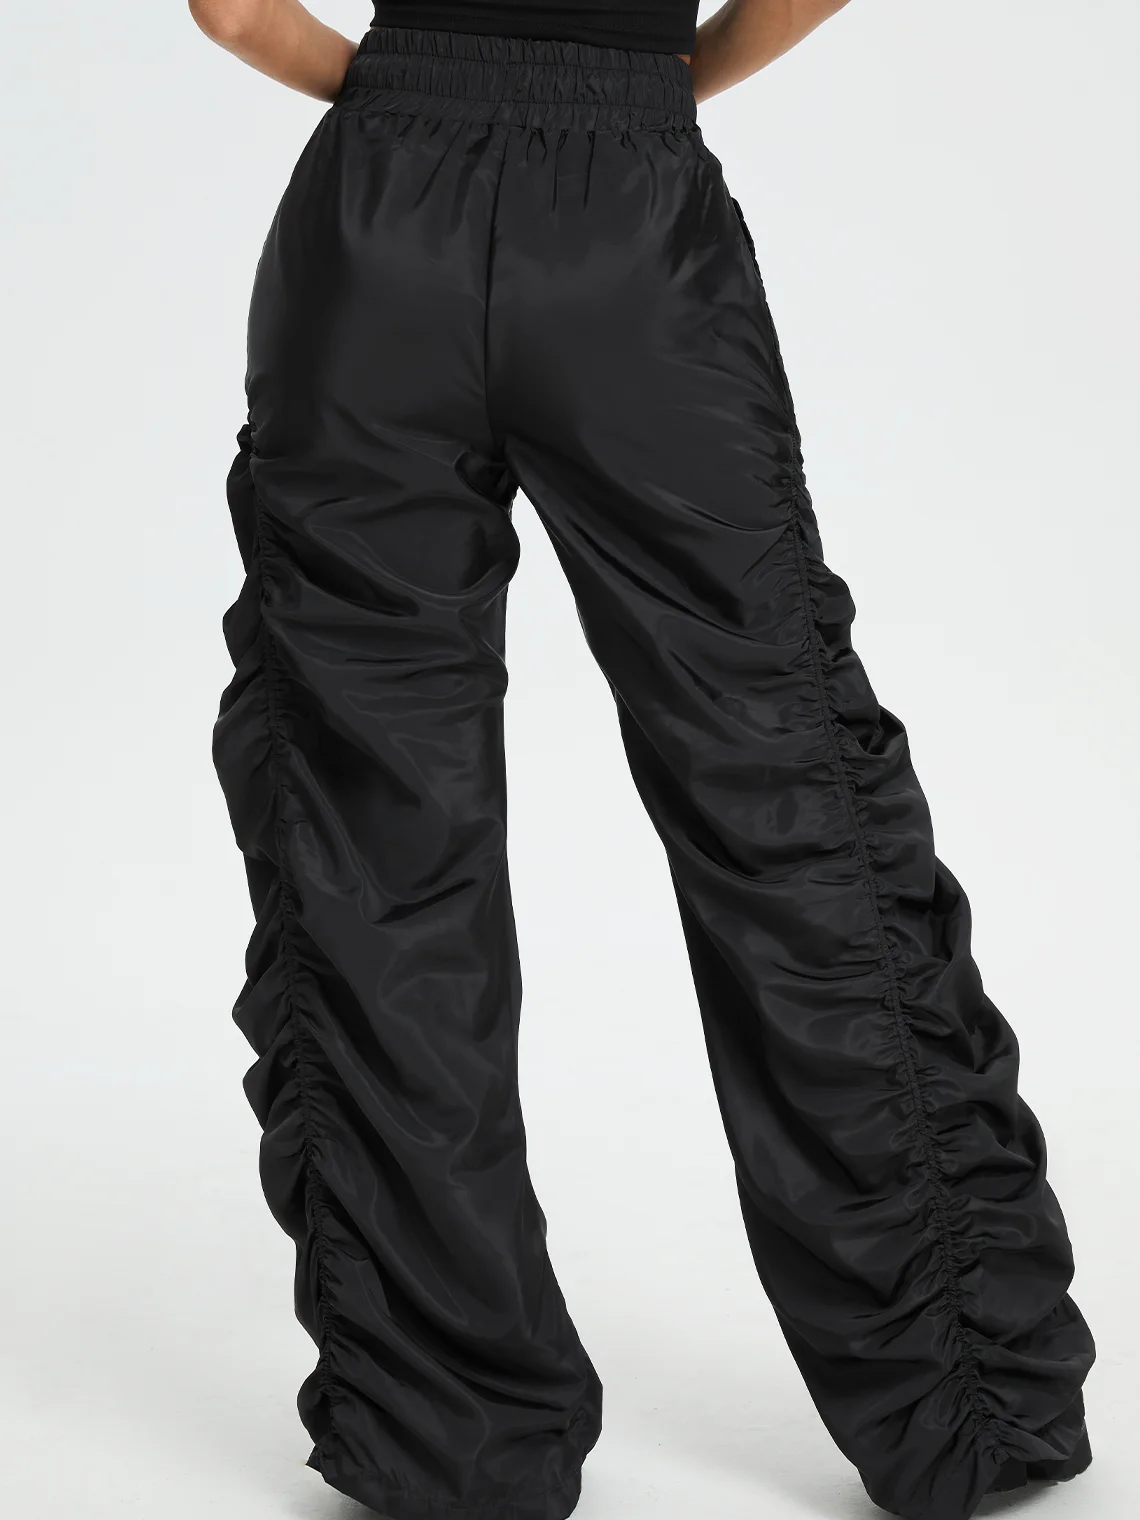 Street Black Wrinkled Bottom Pants